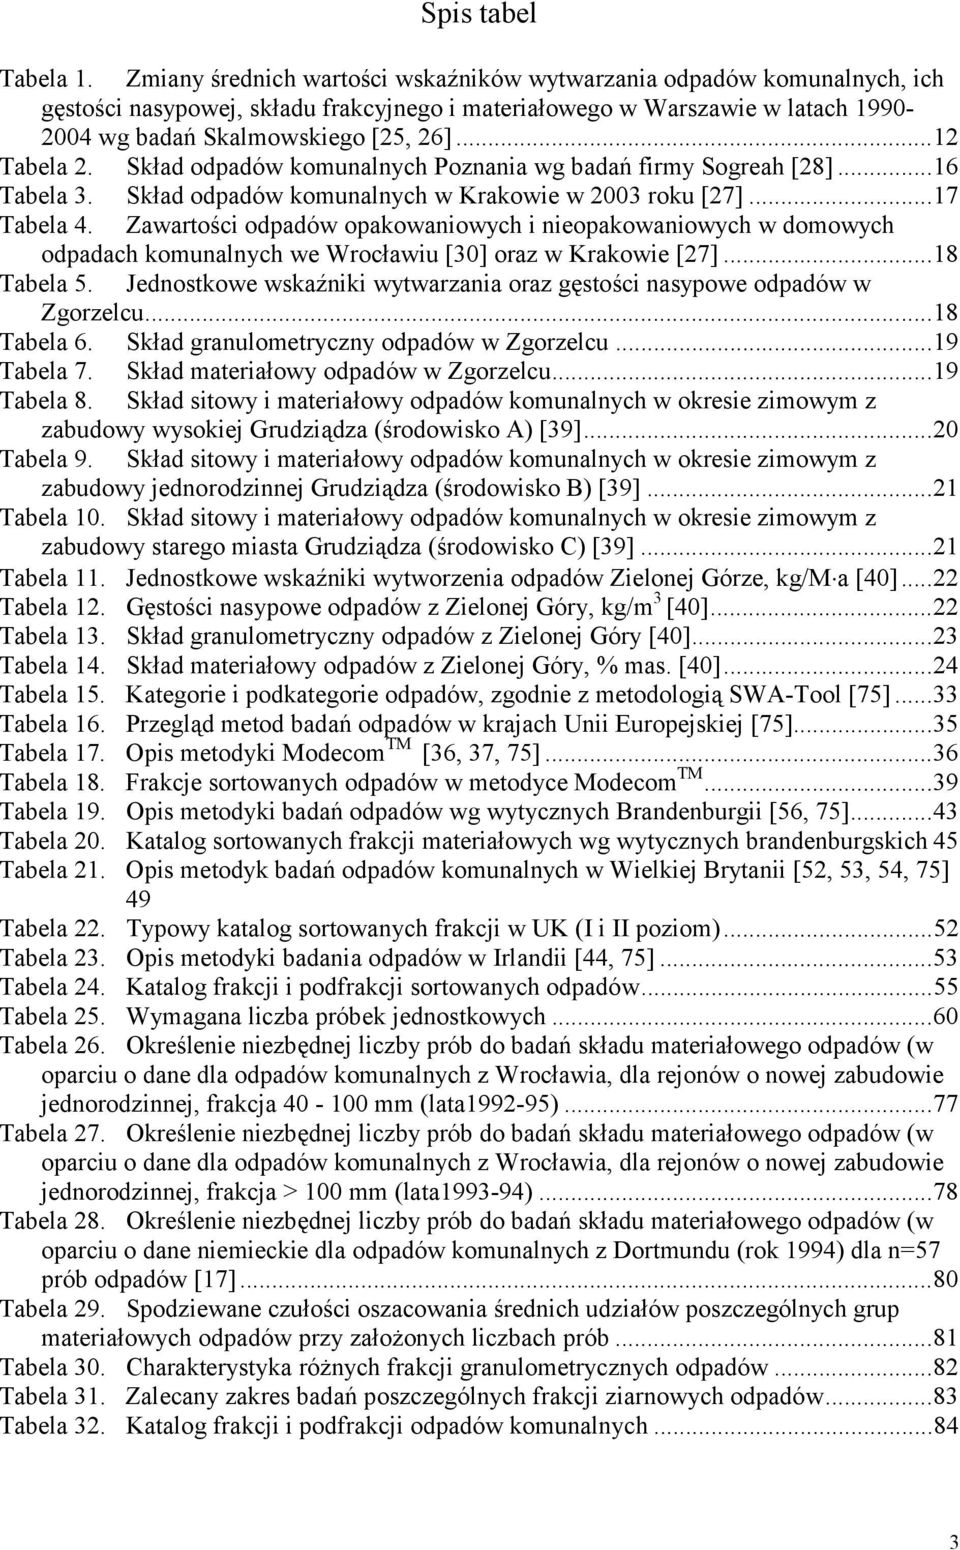 ..12 Tabela 2. Skład odpadów komunalnych Poznania wg badań firmy Sogreah [28]...16 Tabela 3. Skład odpadów komunalnych w Krakowie w 2003 roku [27]...17 Tabela 4.